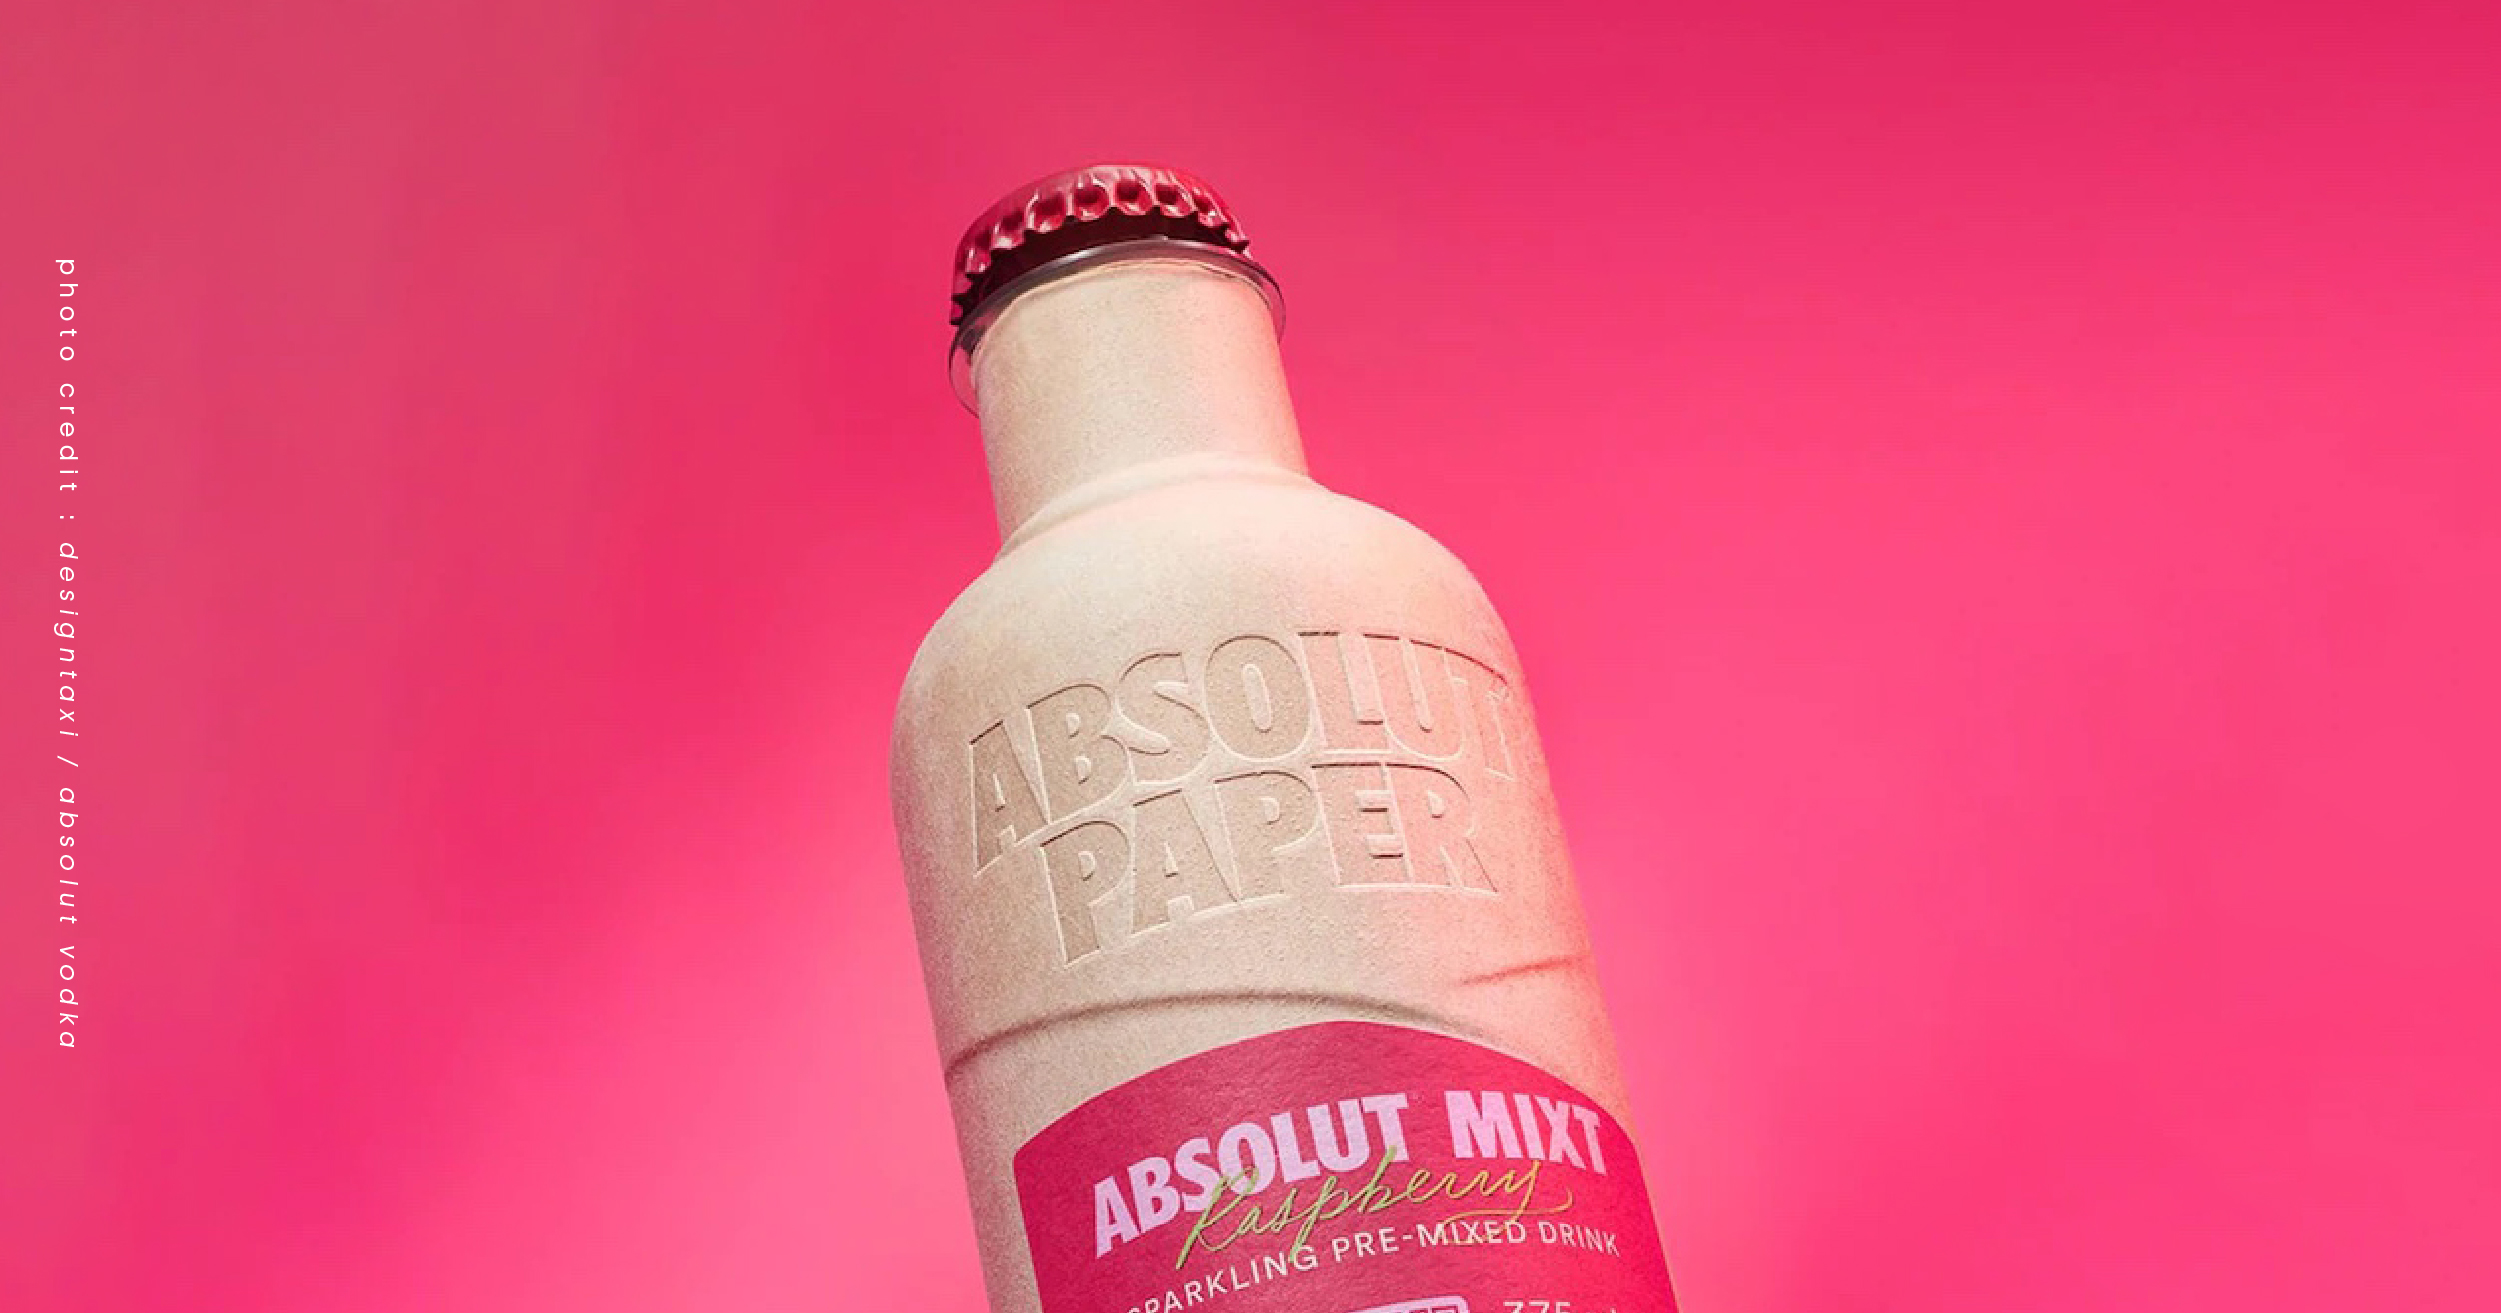 สวยด้วยนะ รักโลกด้วยนะ ถูกใจมากๆ ‘Absolut Vodka’ ออกแบบขวดกระดาษที่ทั้งสวยงามและเป็นมิตรกับสิ่งแวดล้อม